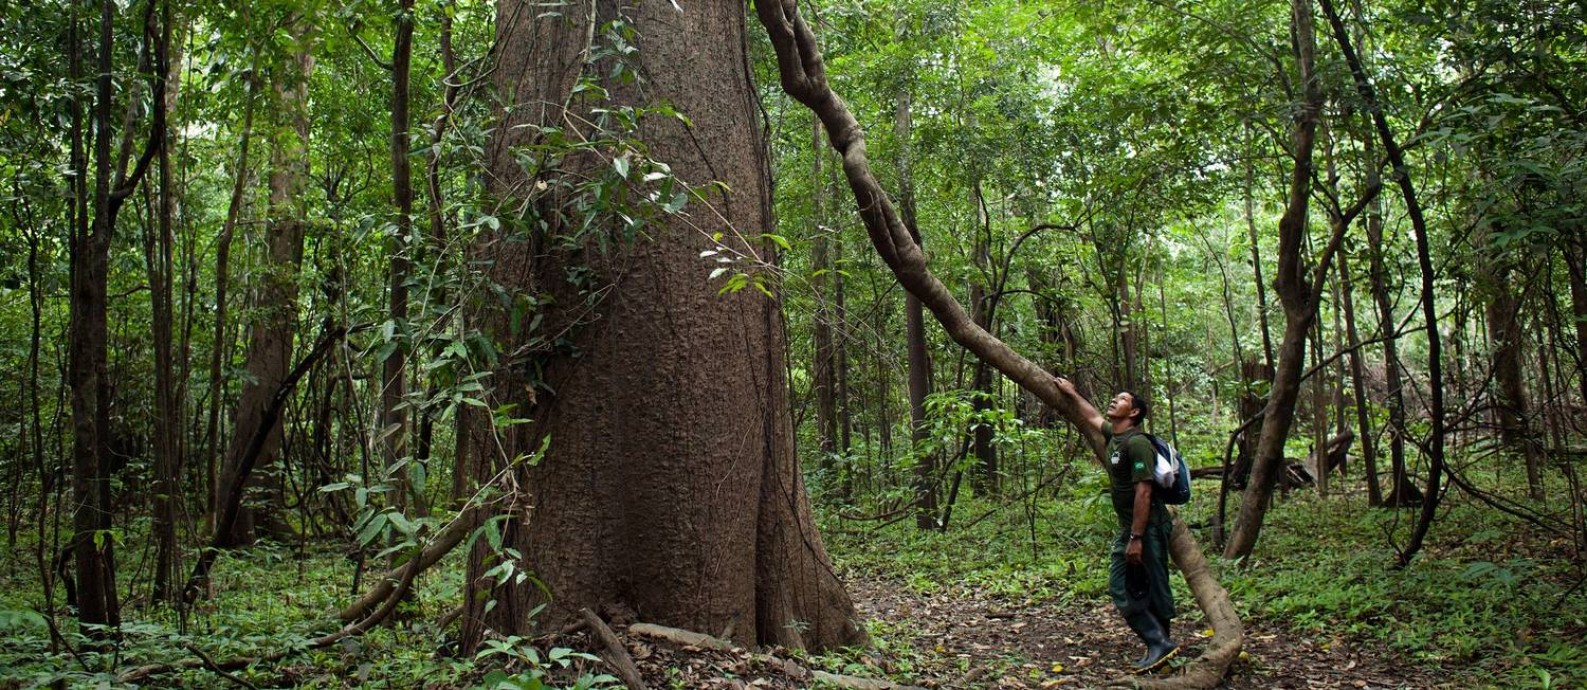 Guia da pousada Uacari, do Instituto Mamirauá, aos pés de uma árvore gigante em plena floresta amazônica Foto: Rafael Forte / Divulgação